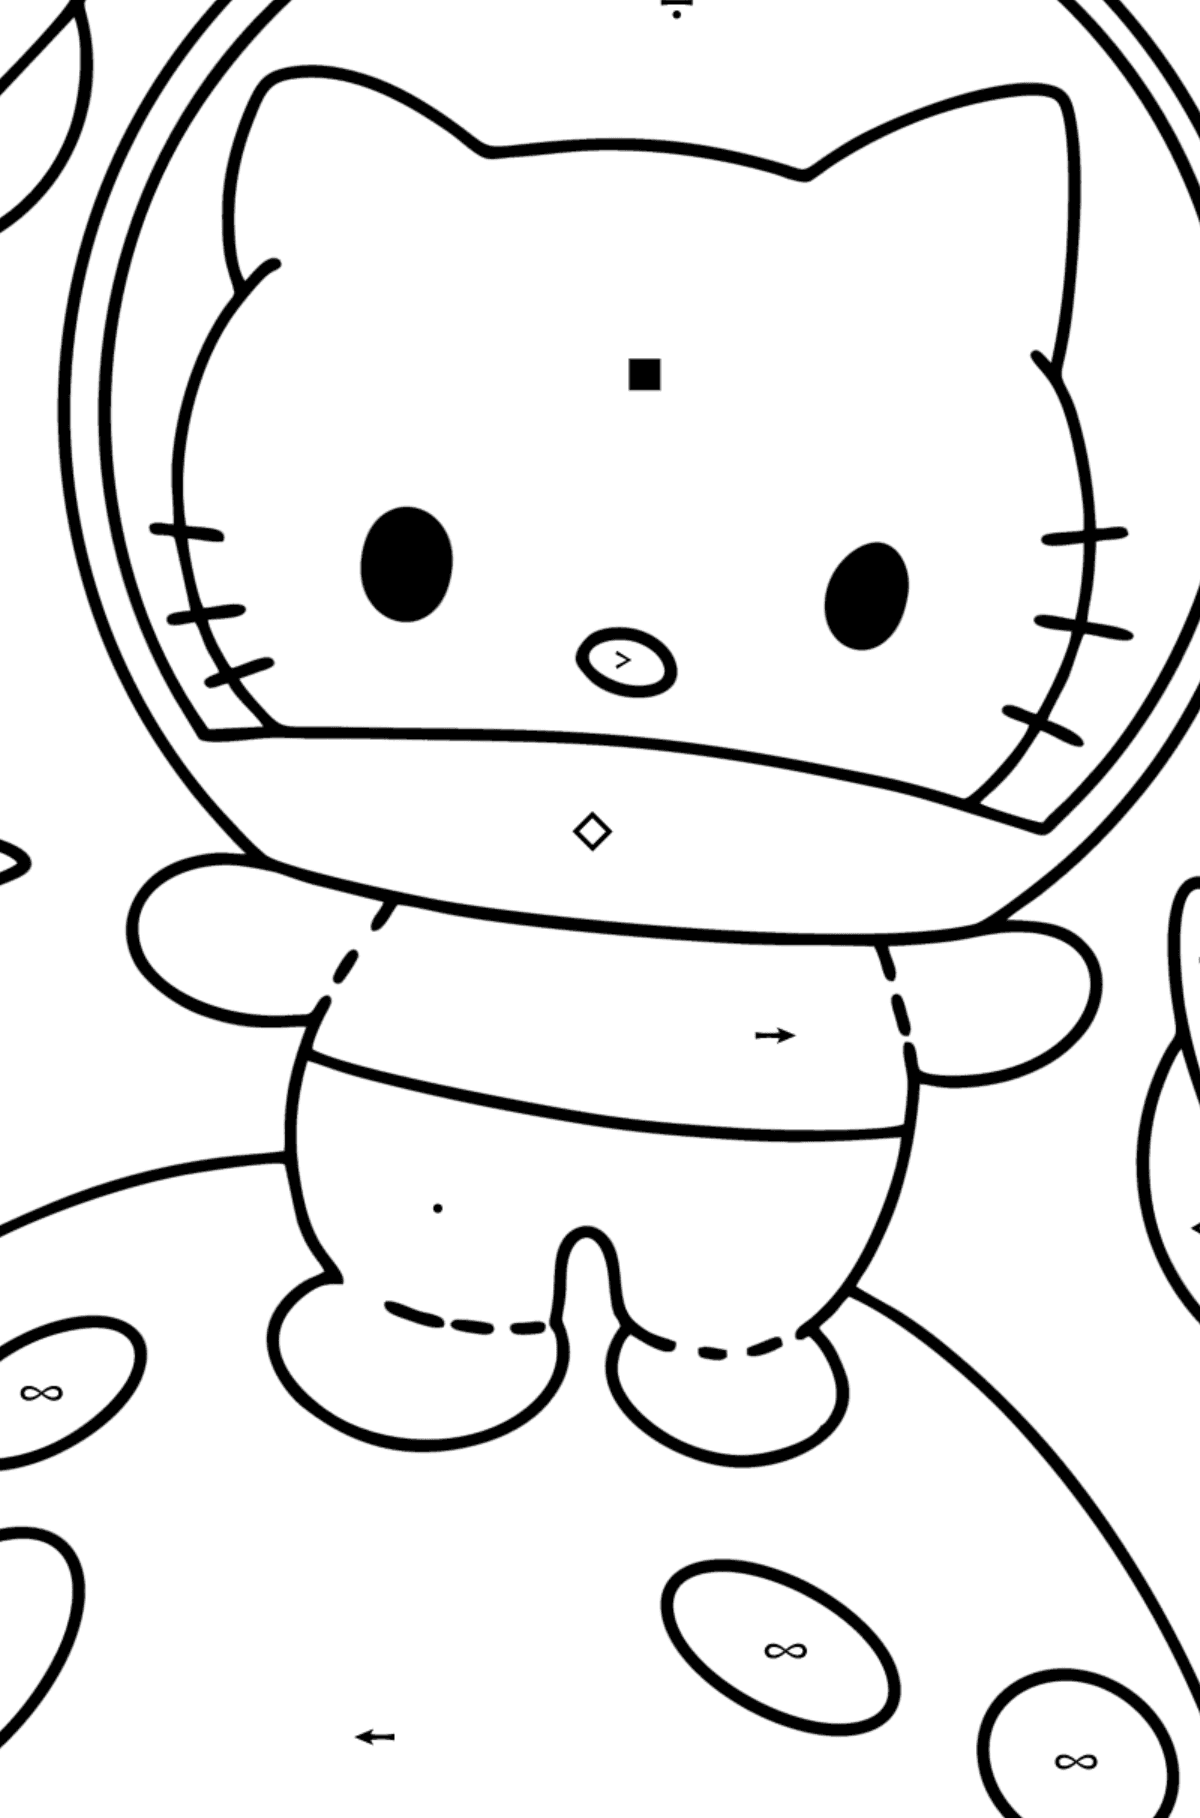 Boyama sayfası Hello Kitty astronot - Sembollerle Boyama çocuklar için